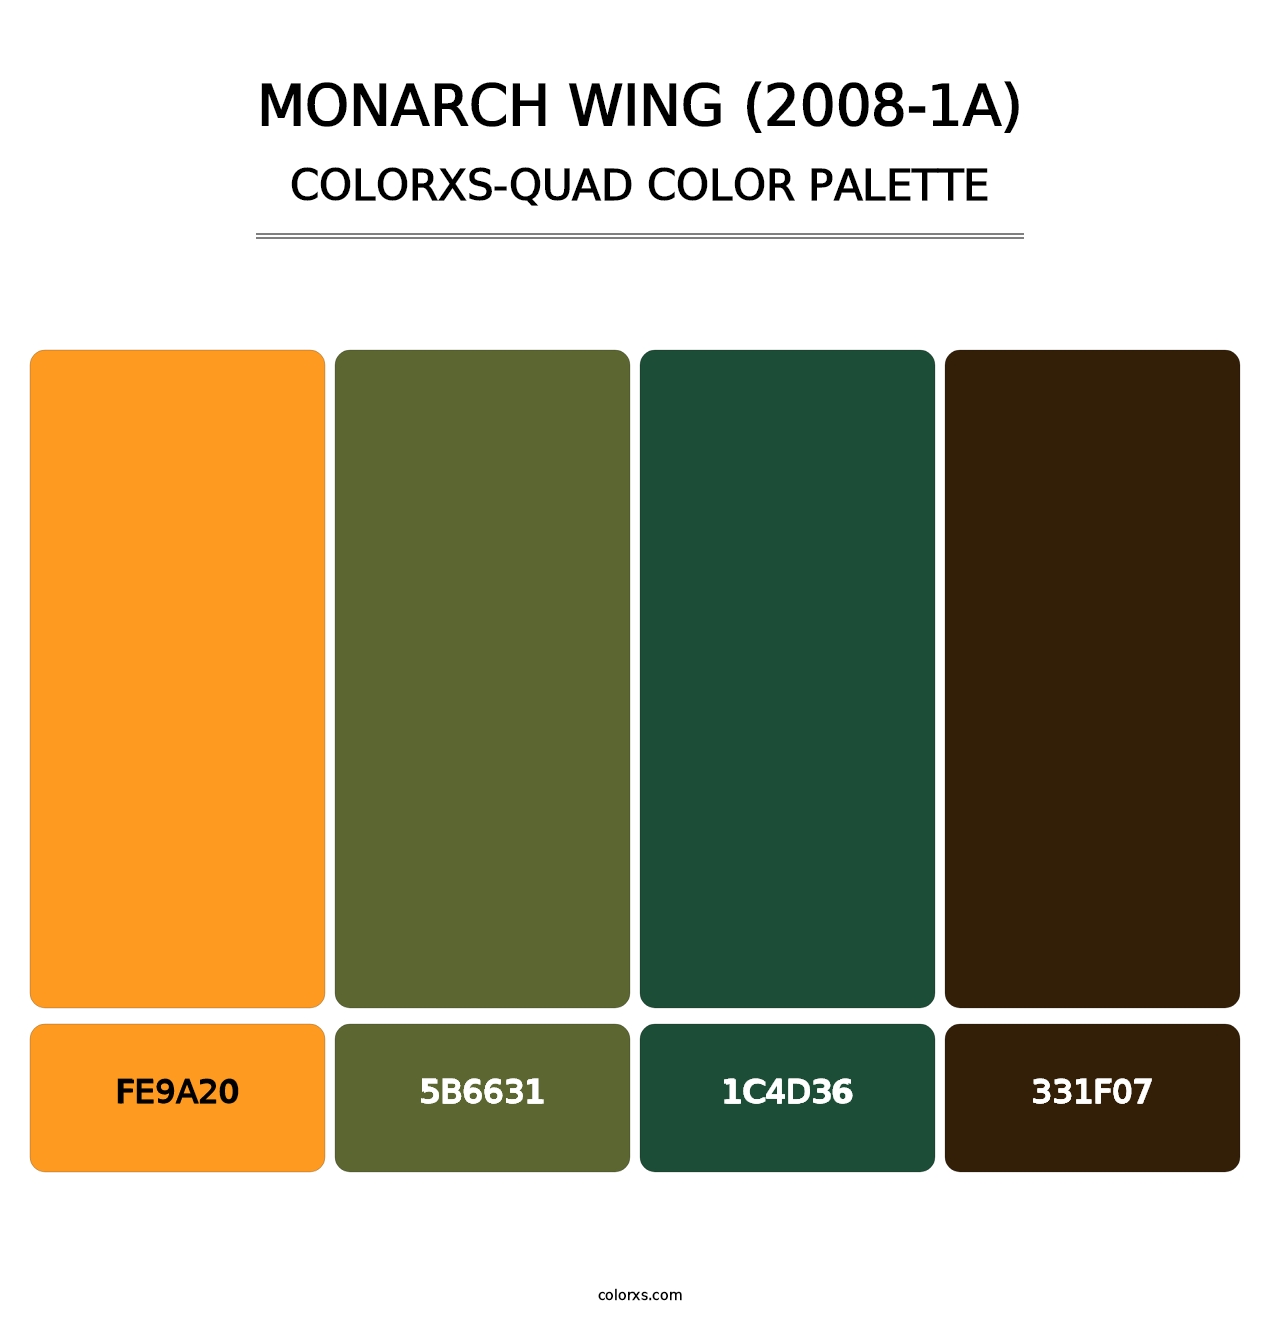 Monarch Wing (2008-1A) - Colorxs Quad Palette